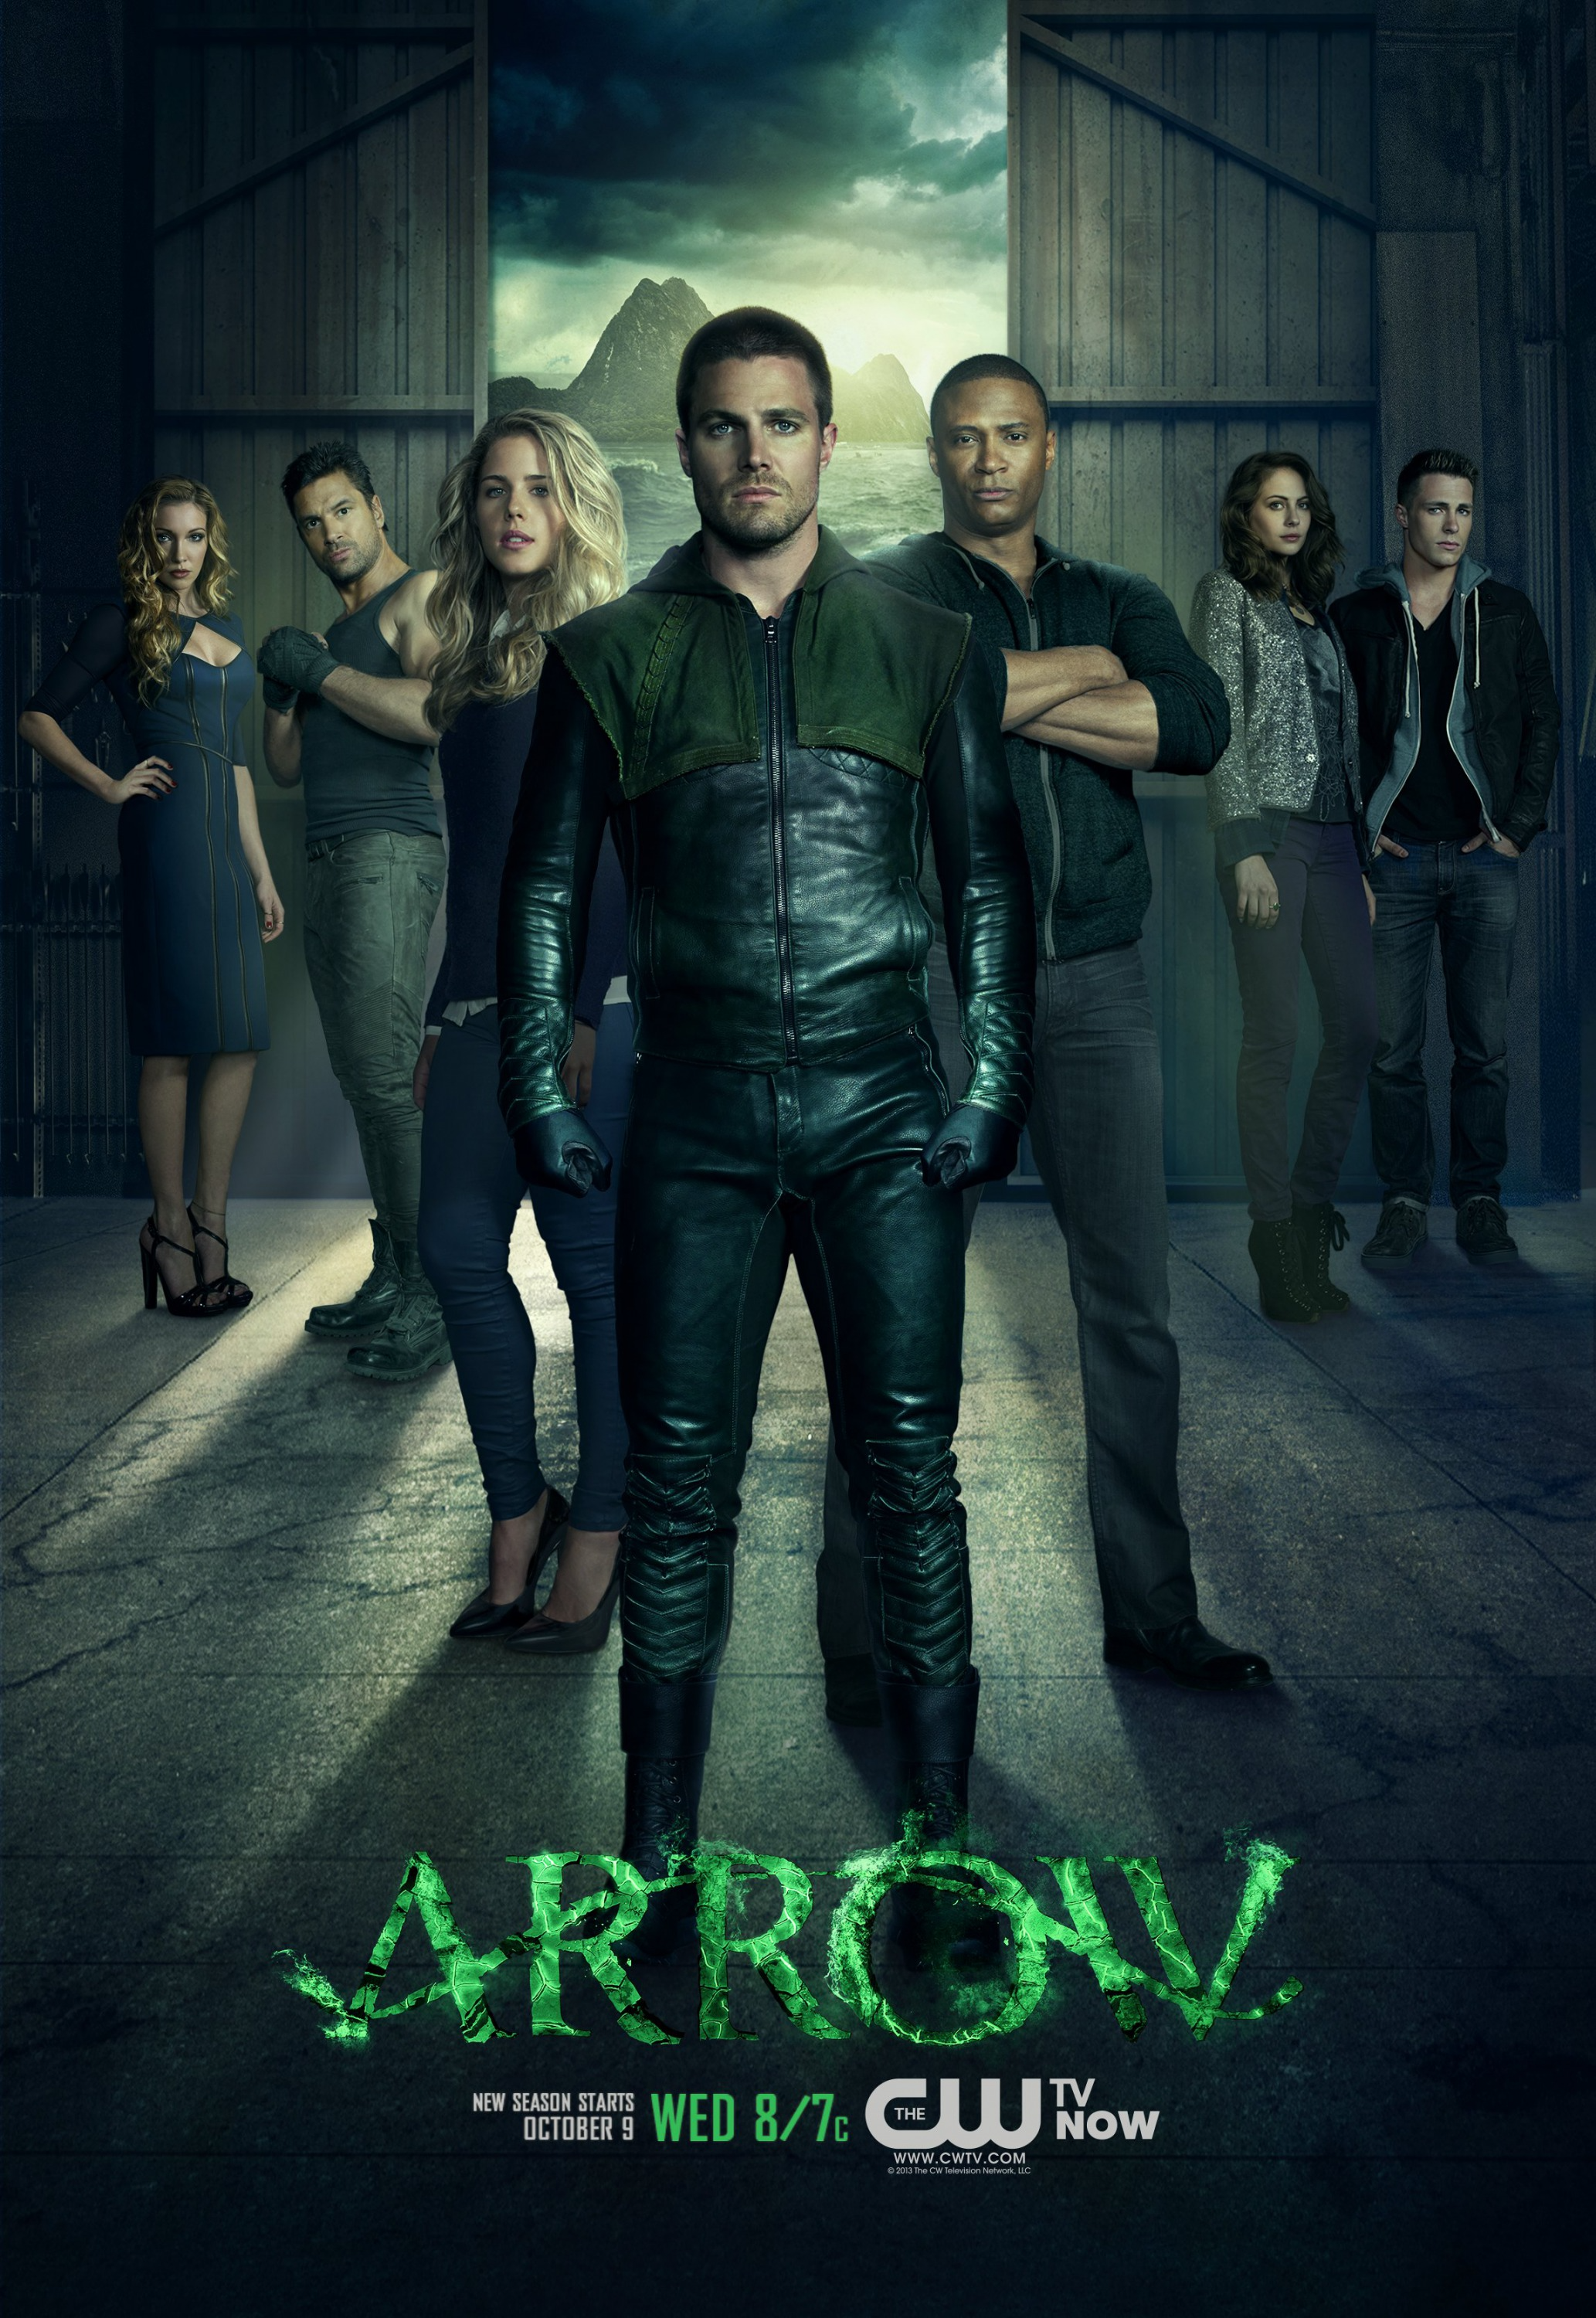 the cast of arrow season 1